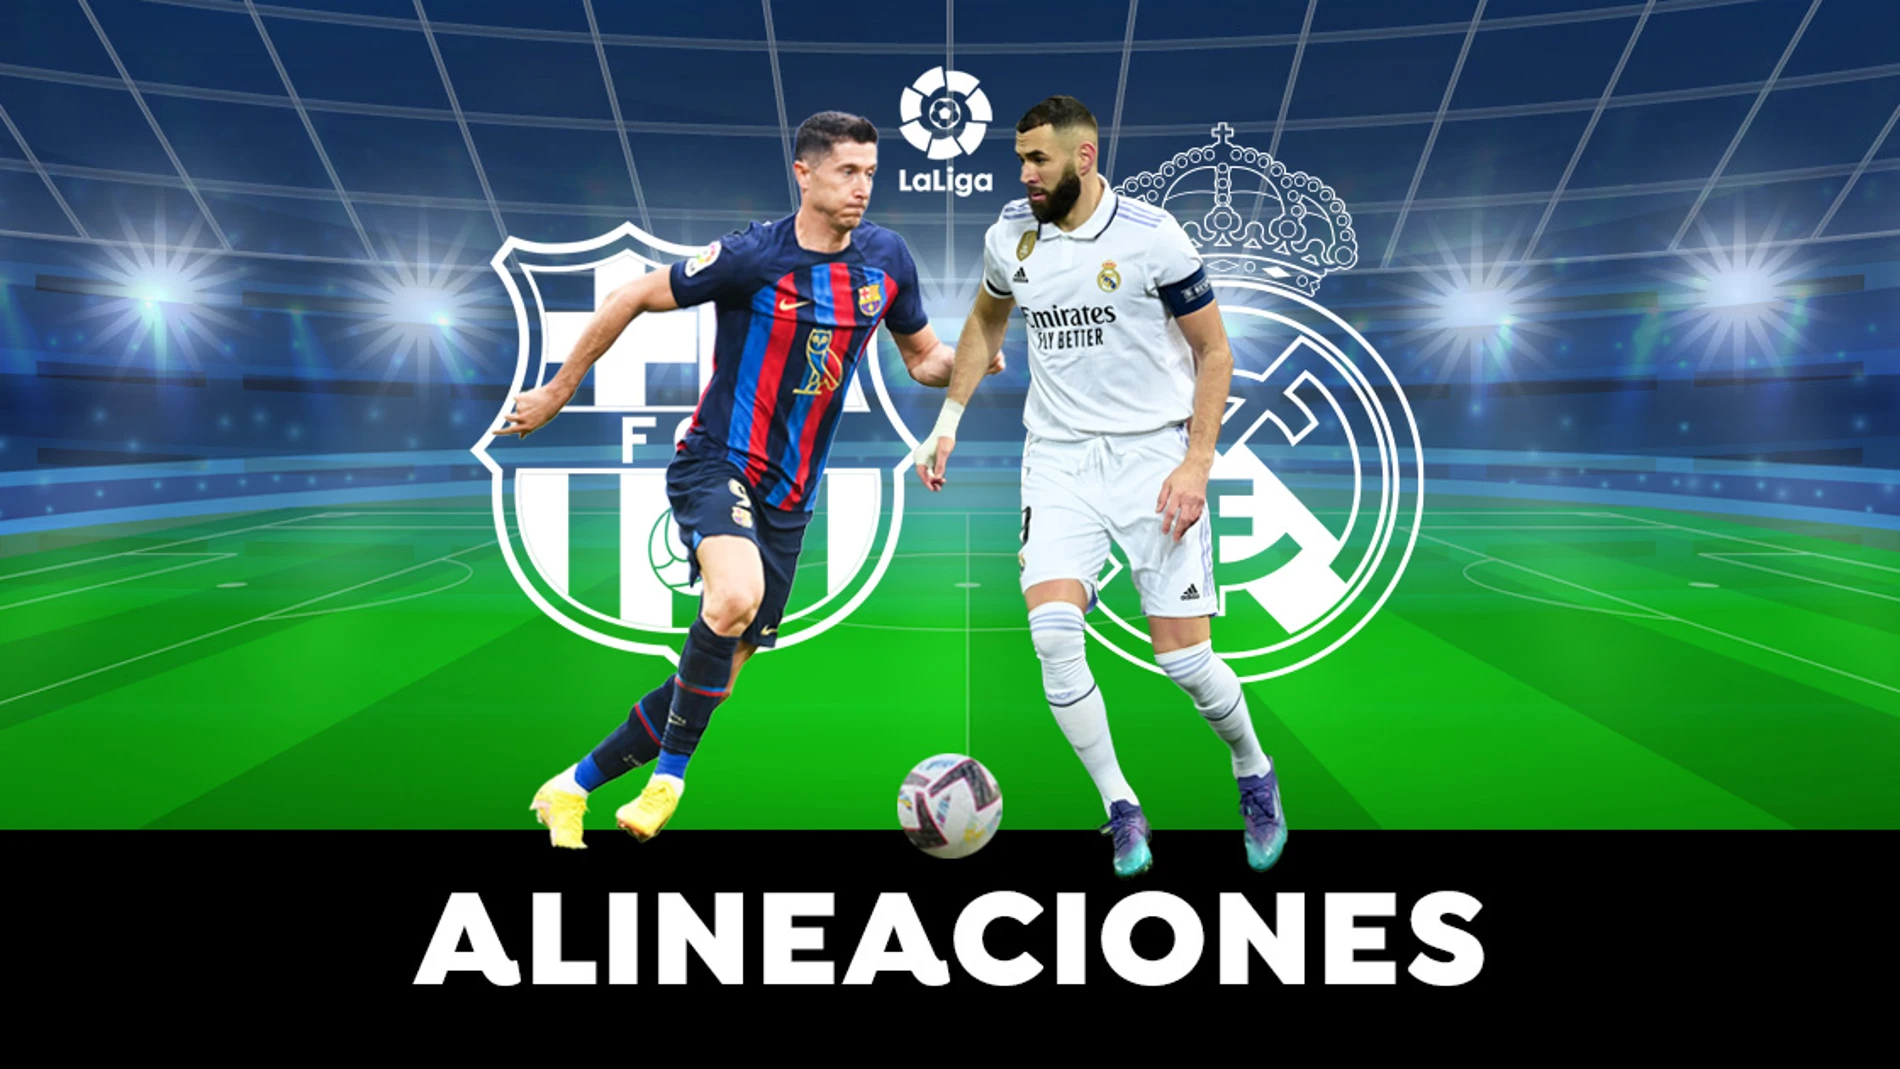 Alineaciones probables del Barcelona - Real Madrid en el Clásico de LaLiga de hoy